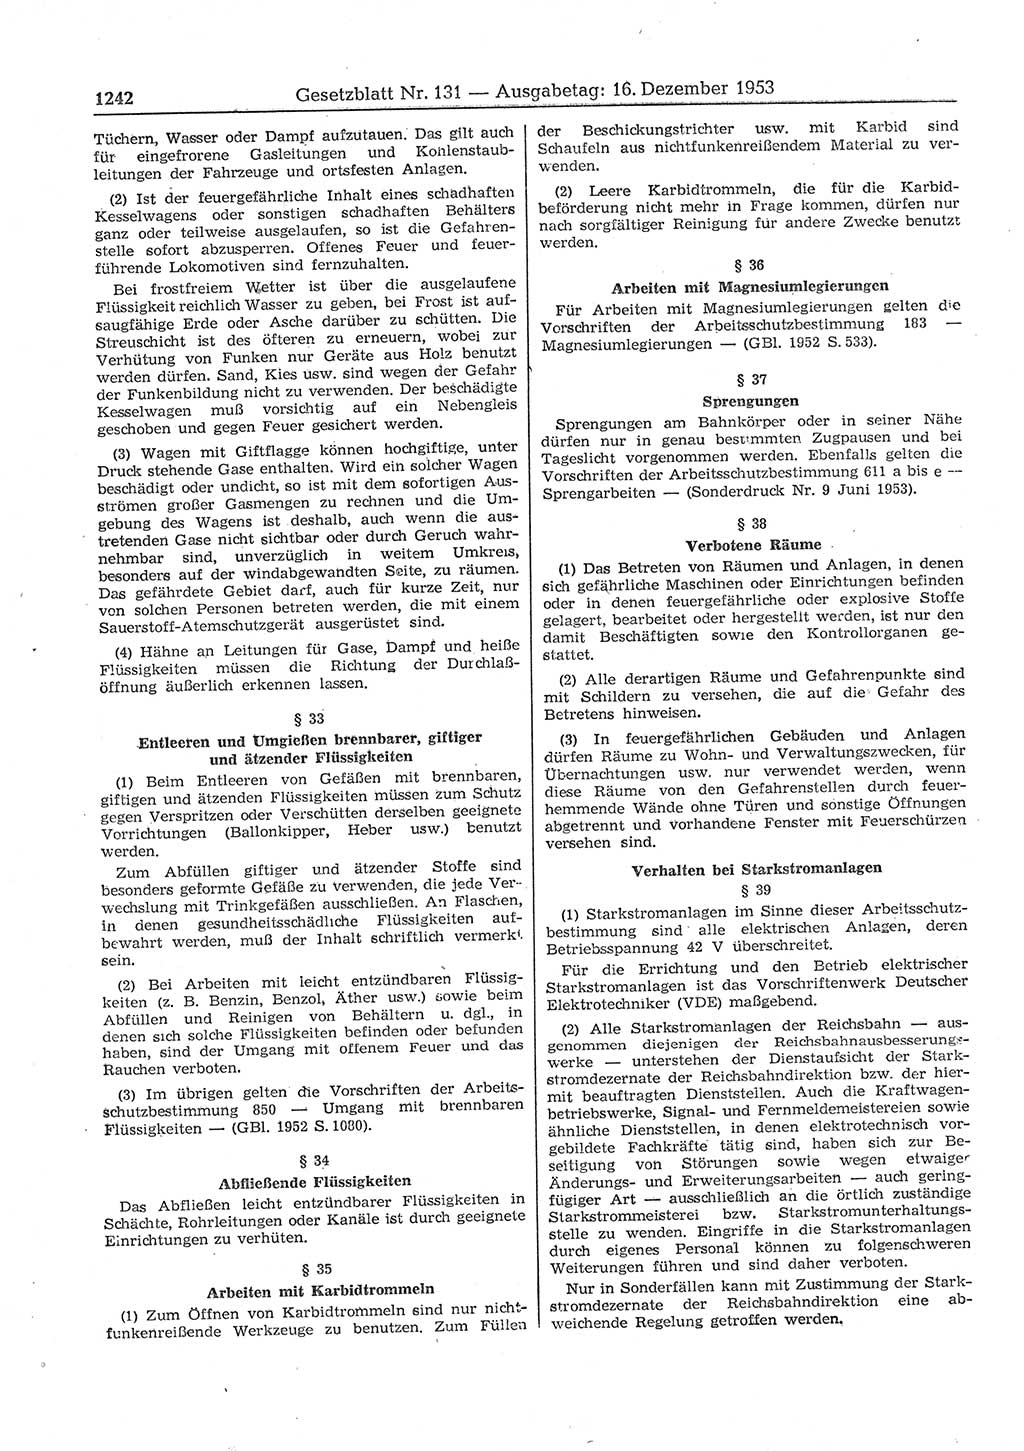 Gesetzblatt (GBl.) der Deutschen Demokratischen Republik (DDR) 1953, Seite 1242 (GBl. DDR 1953, S. 1242)